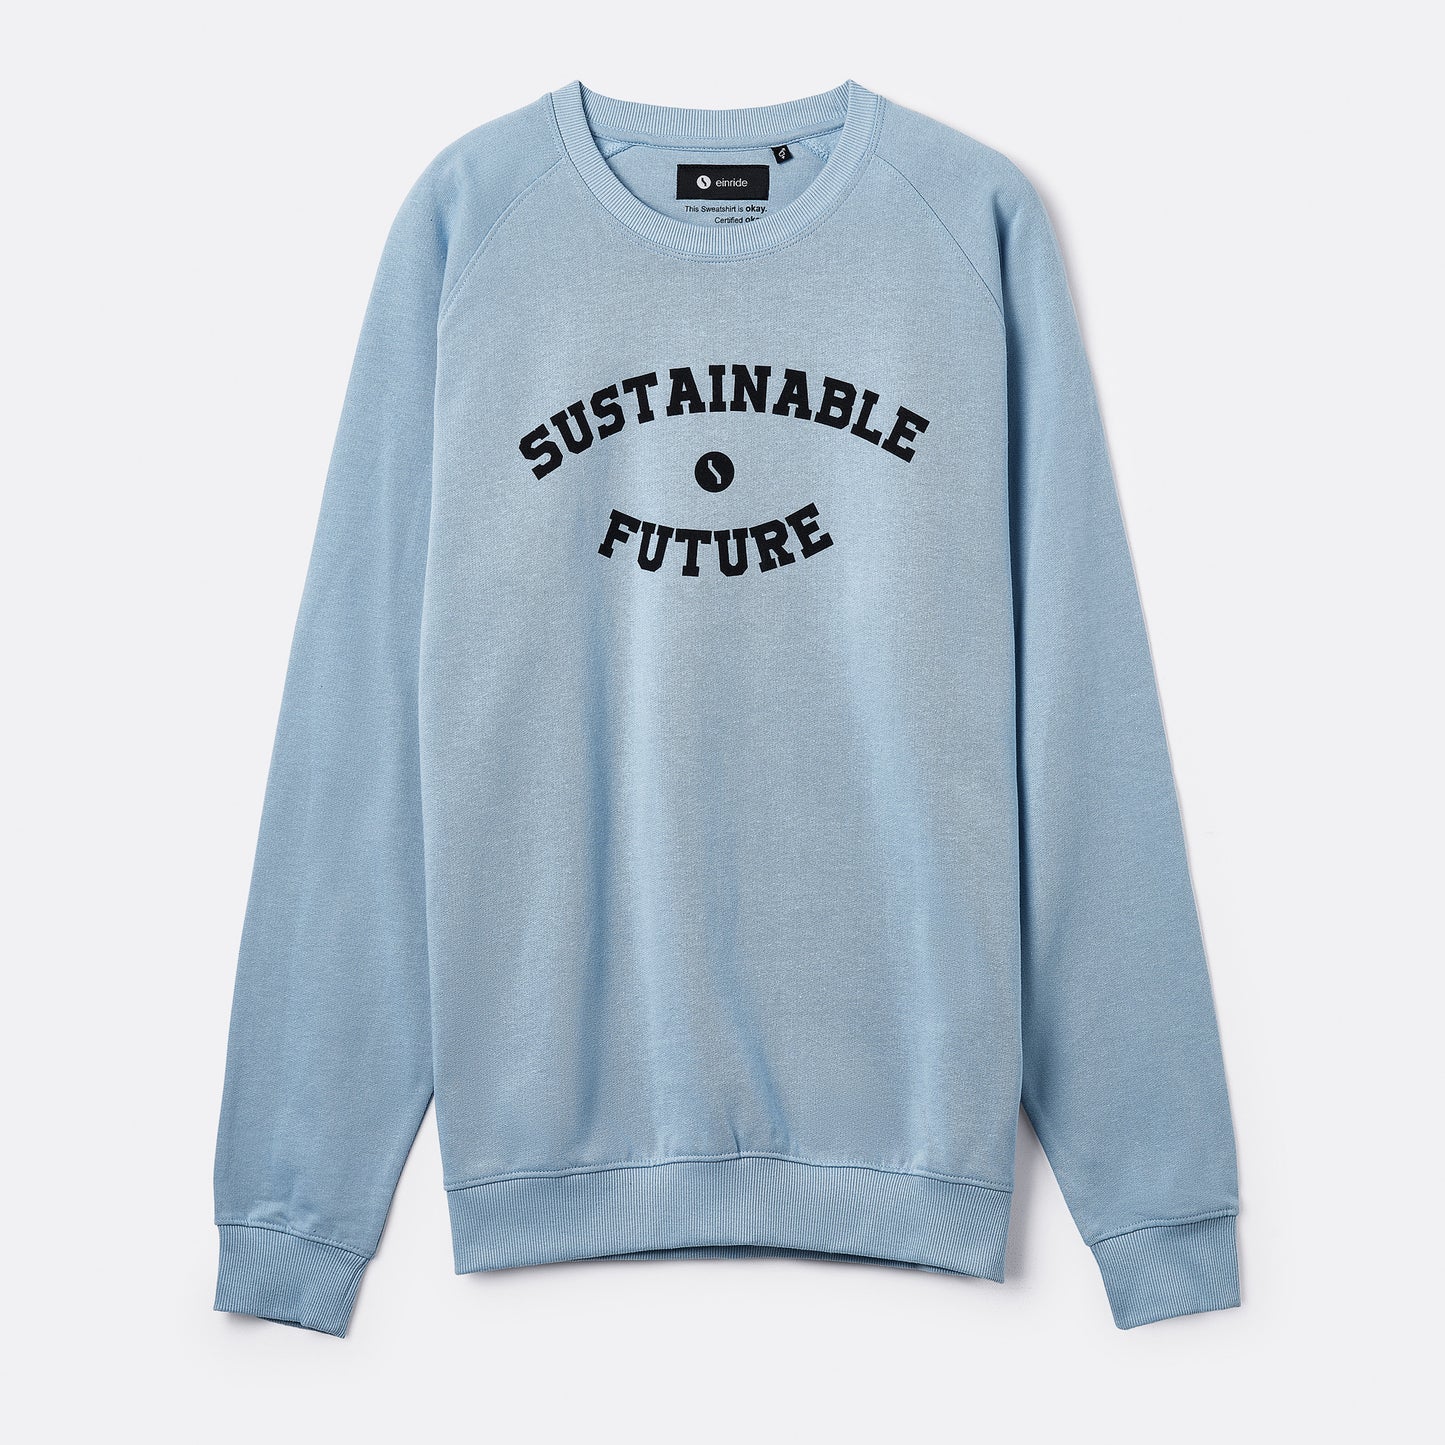 Sweatshirt Sustainable future